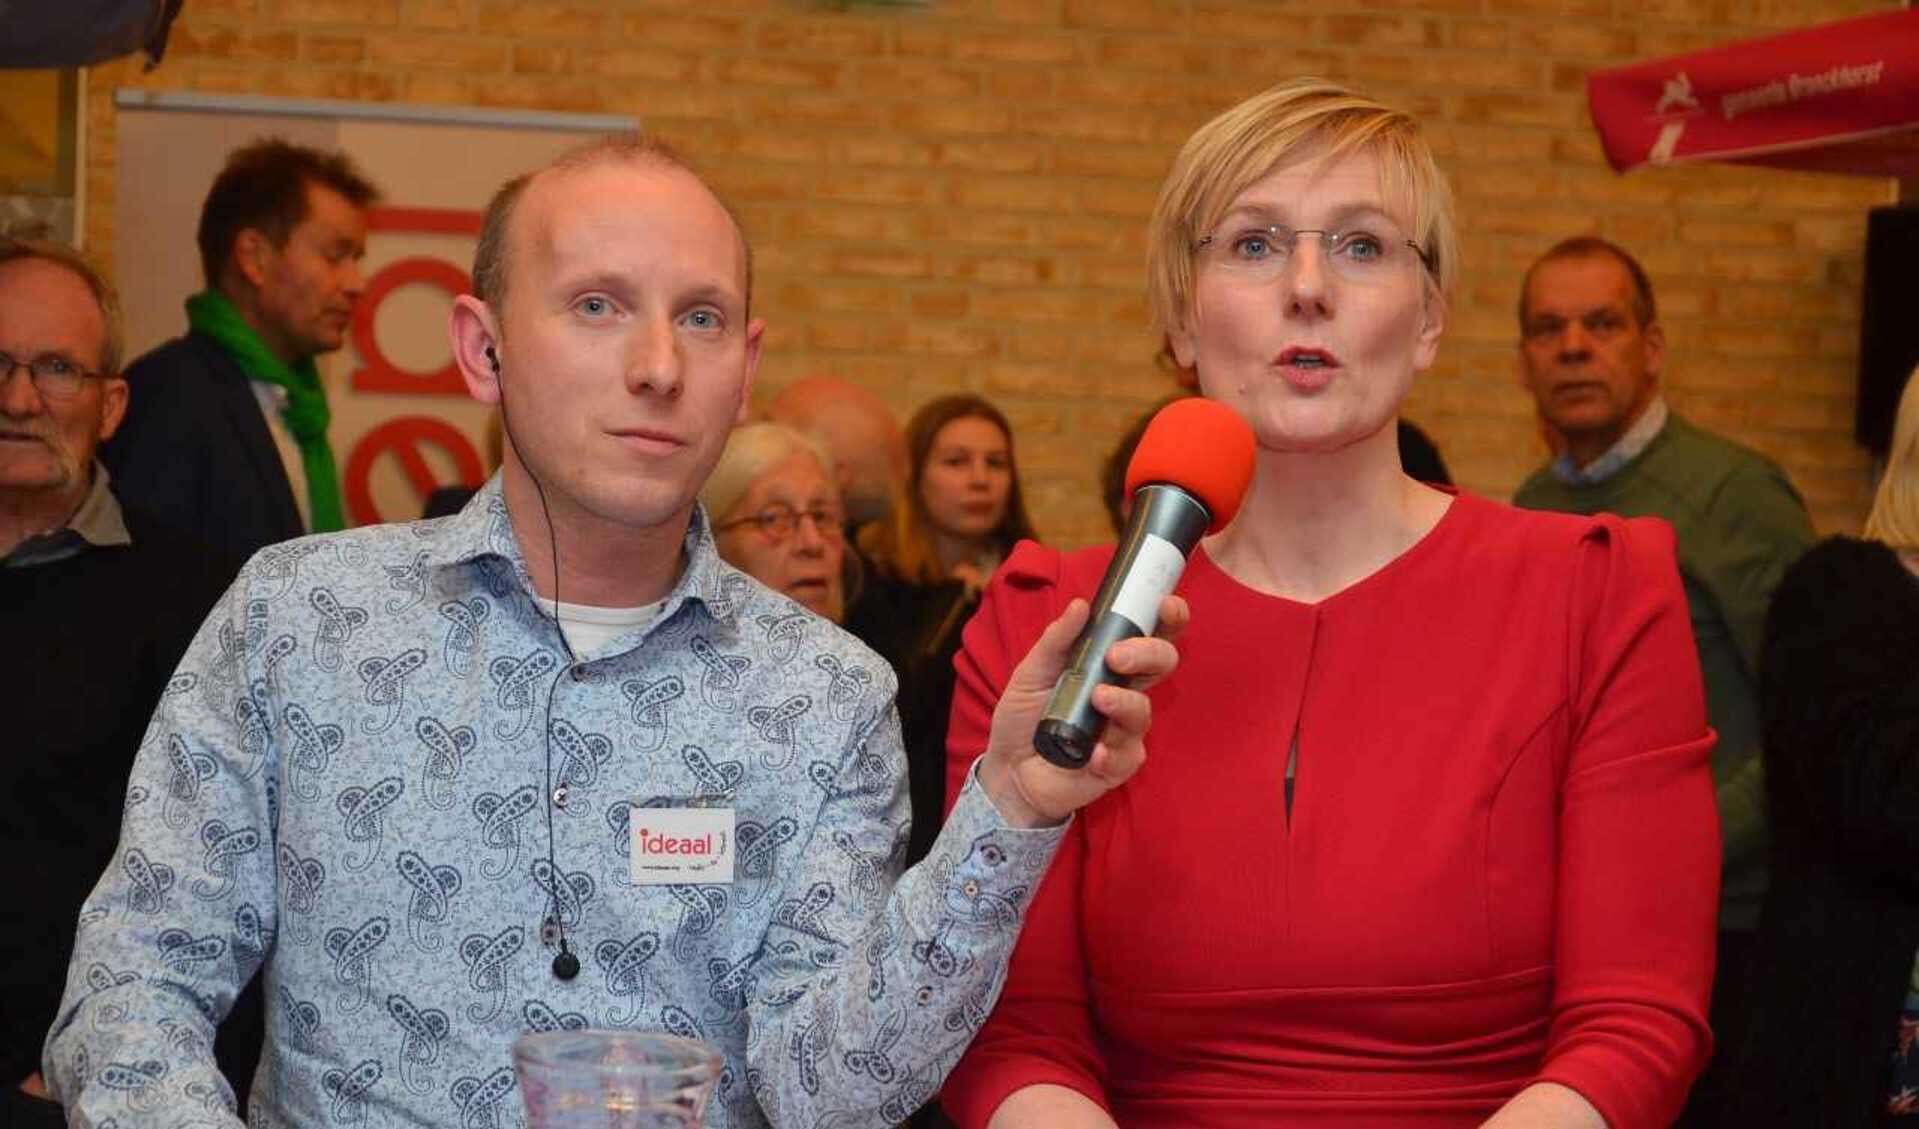 Burgemeester Marianne Besselink en Björn Kummeling van Ideaal presenteren de uitslagen. Foto: Ideaal.org/Jaimy Buunk